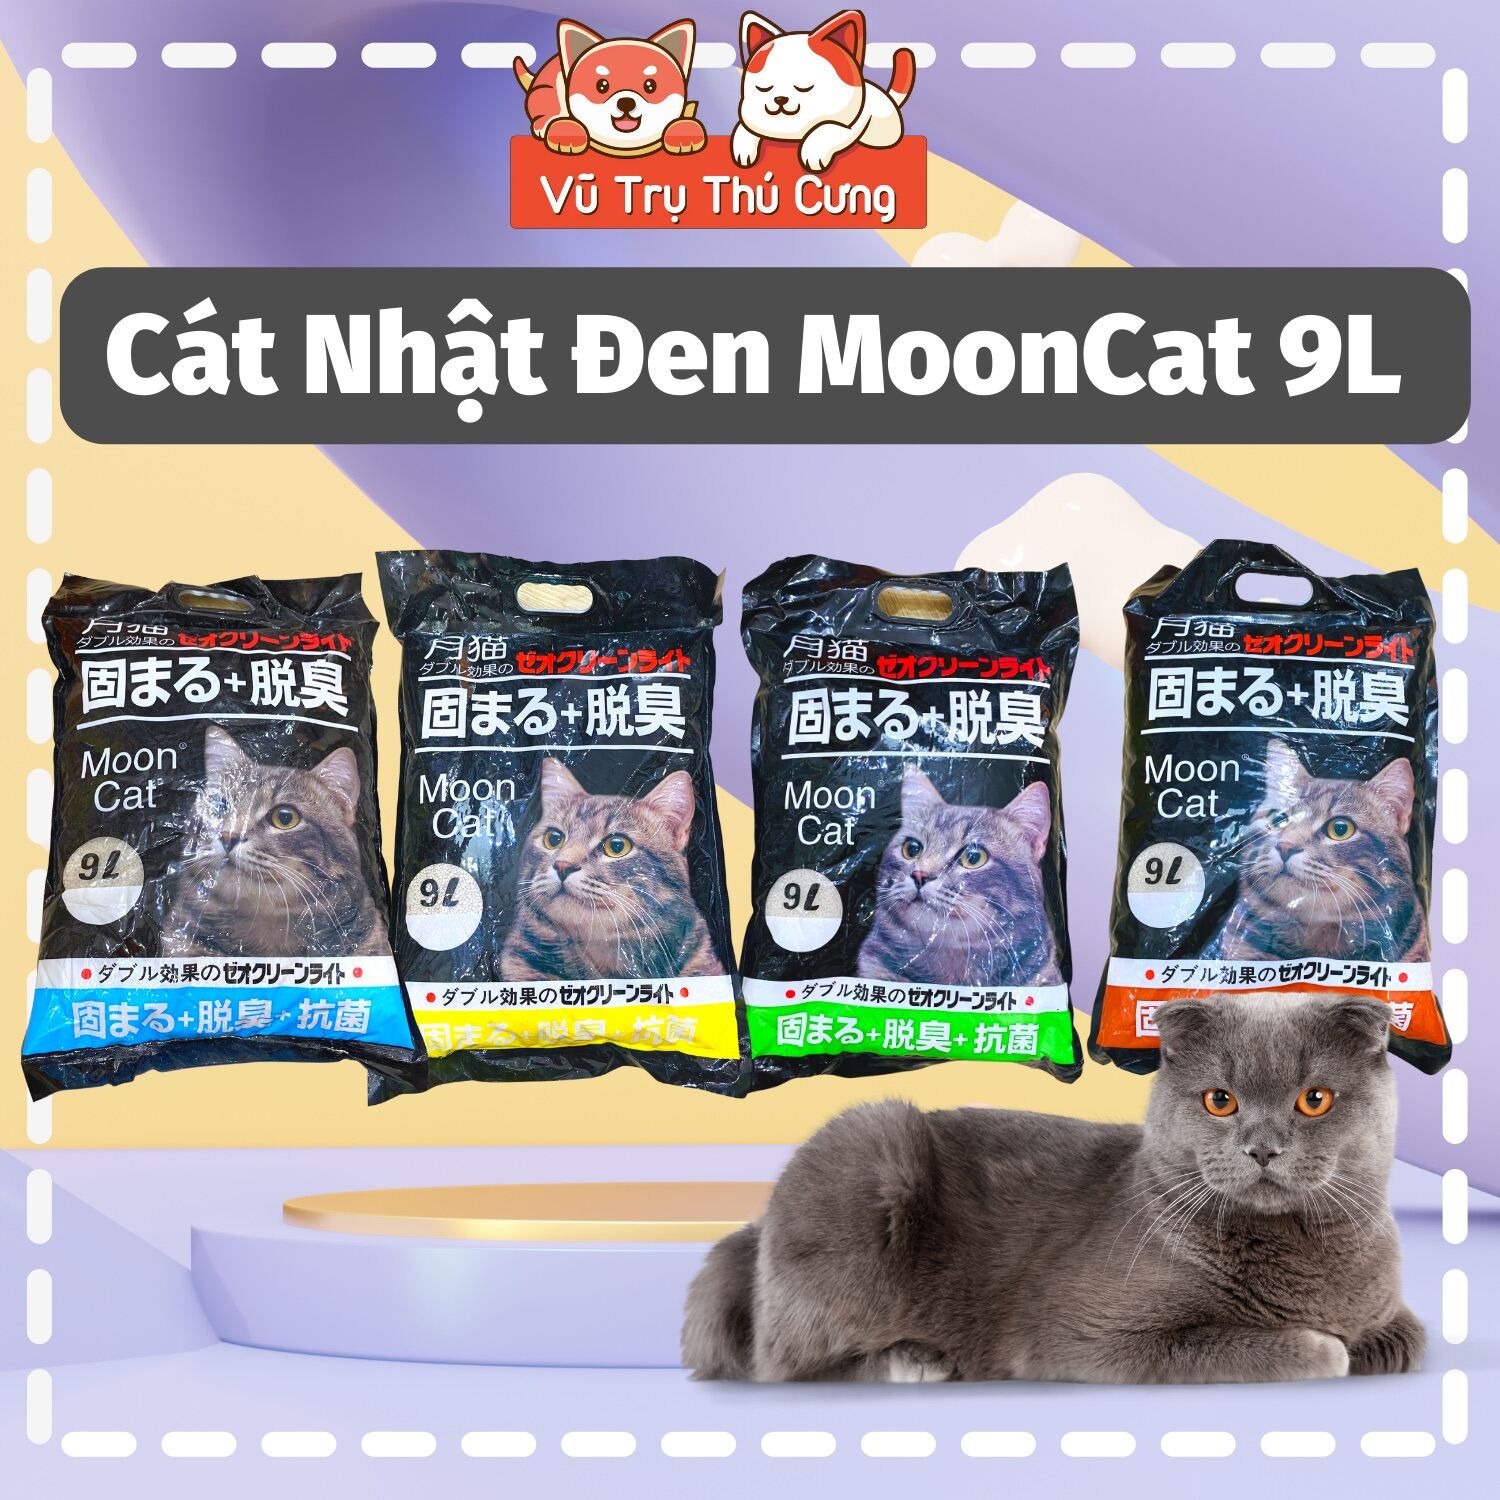 Cát Nhật Đen Moon Cat 9L vệ sinh cho mèo, vón cục, khử mùi tốt